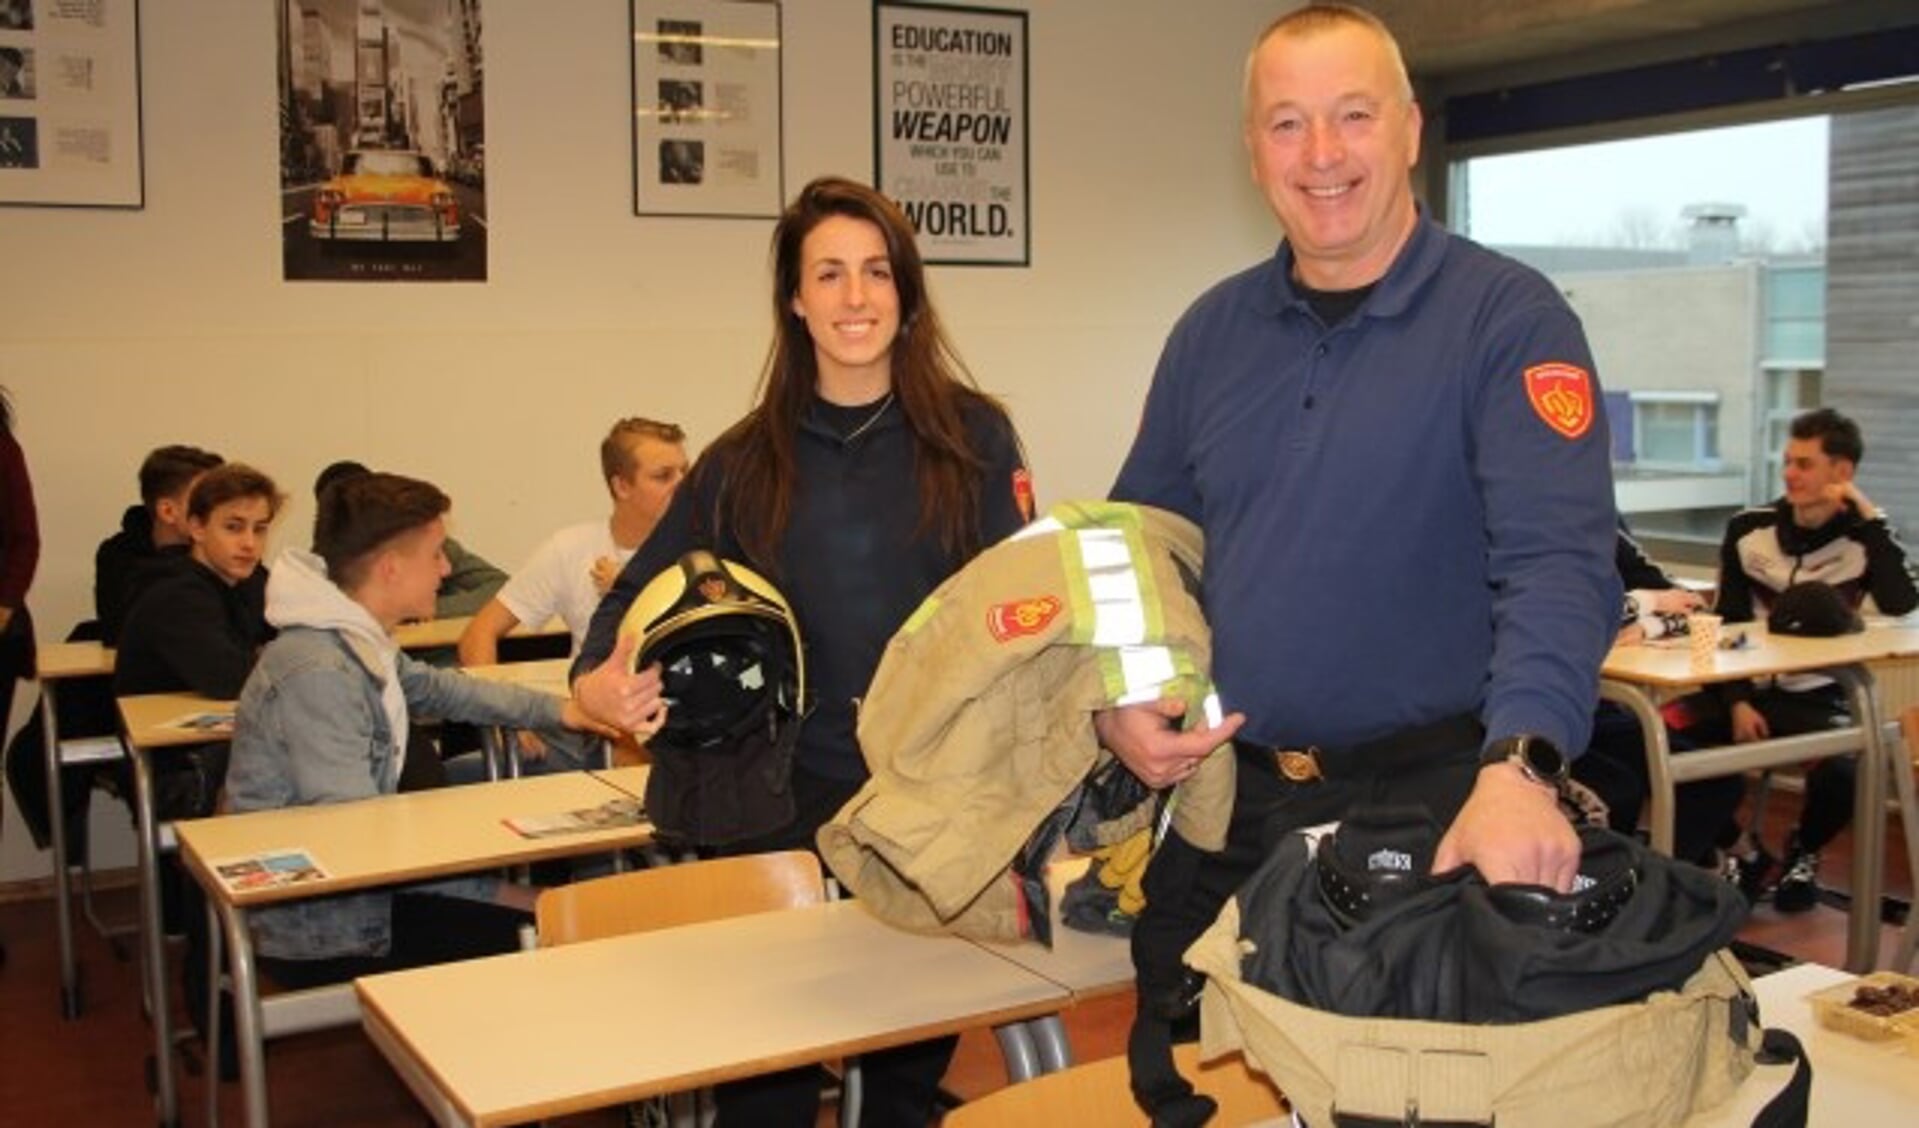 Dochter Celine en vader Jan vertelden de Cals-leerlingen met passie over hun vrijwilligerswerk bij de brandweer. (Foto: Lysette Verwegen)